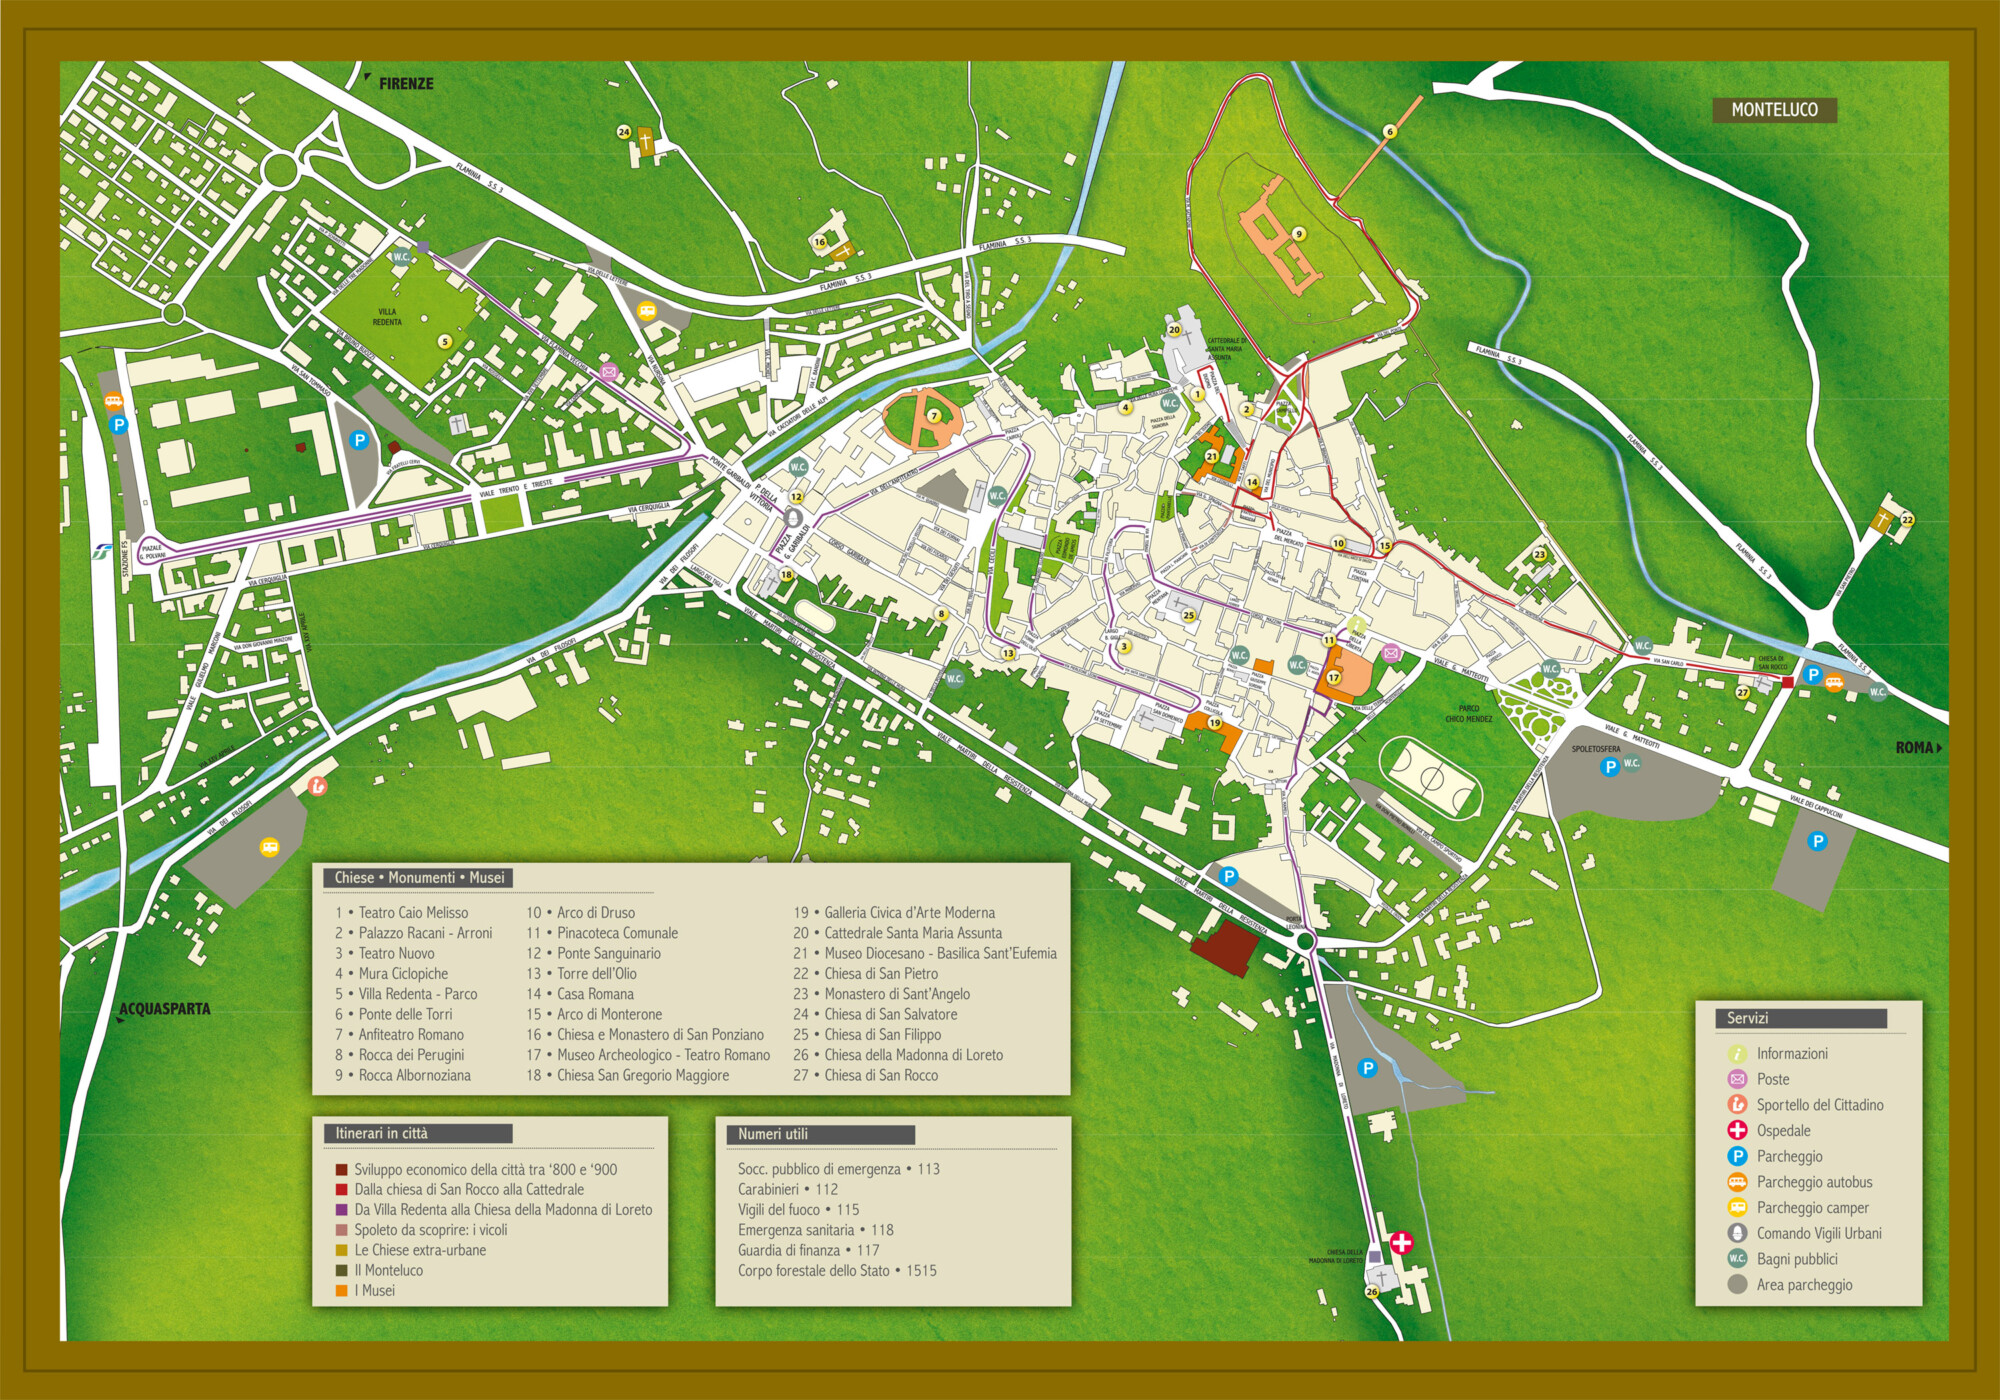 Spoleto Mappa turistica